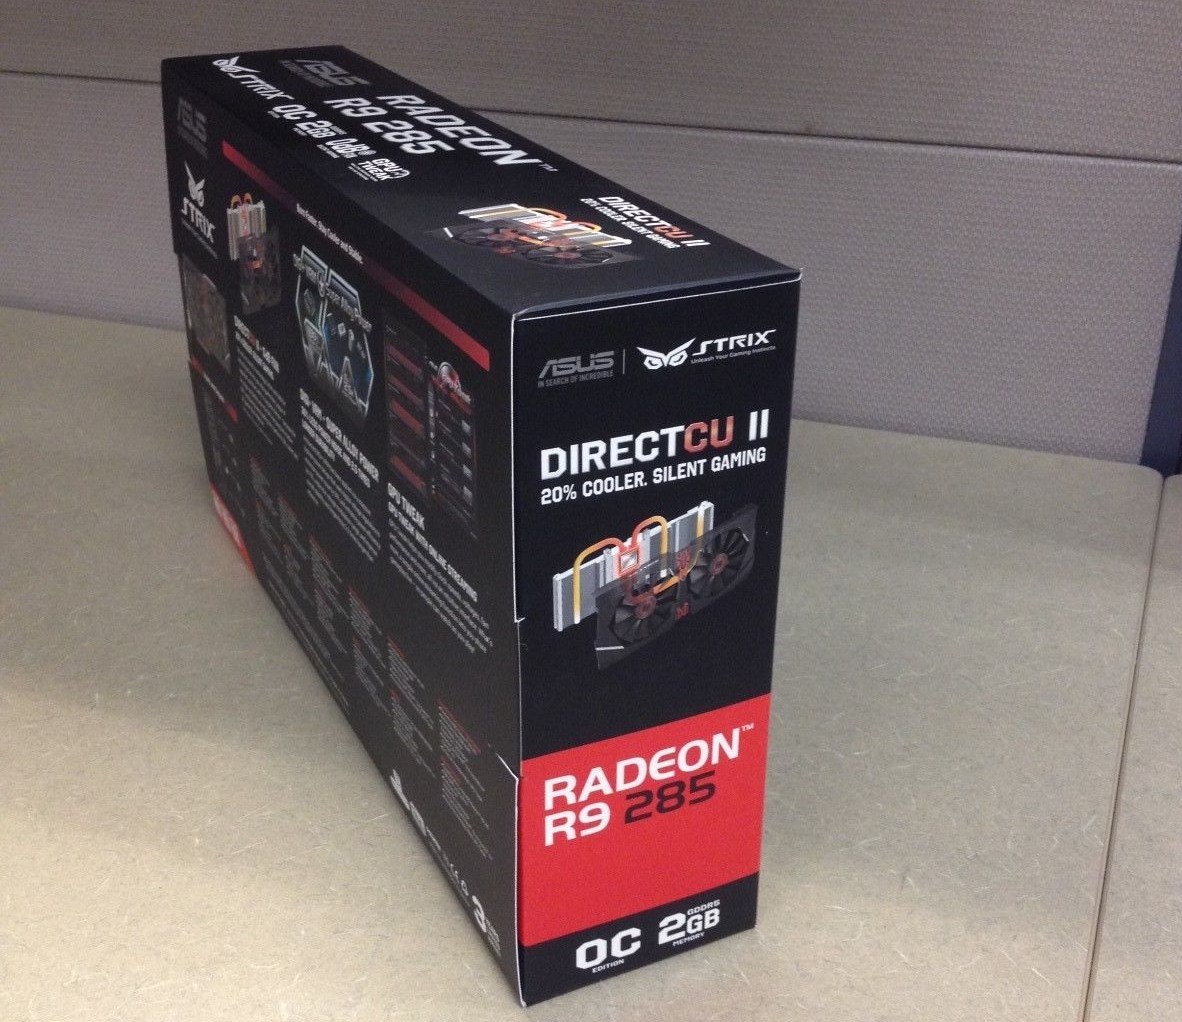 Immagine pubblicata in relazione al seguente contenuto: Prime foto e specifiche della video card Radeon R9 285 Strix di ASUS | Nome immagine: news21550_ASUS-Radeon-R9-285-Strix_7.jpg